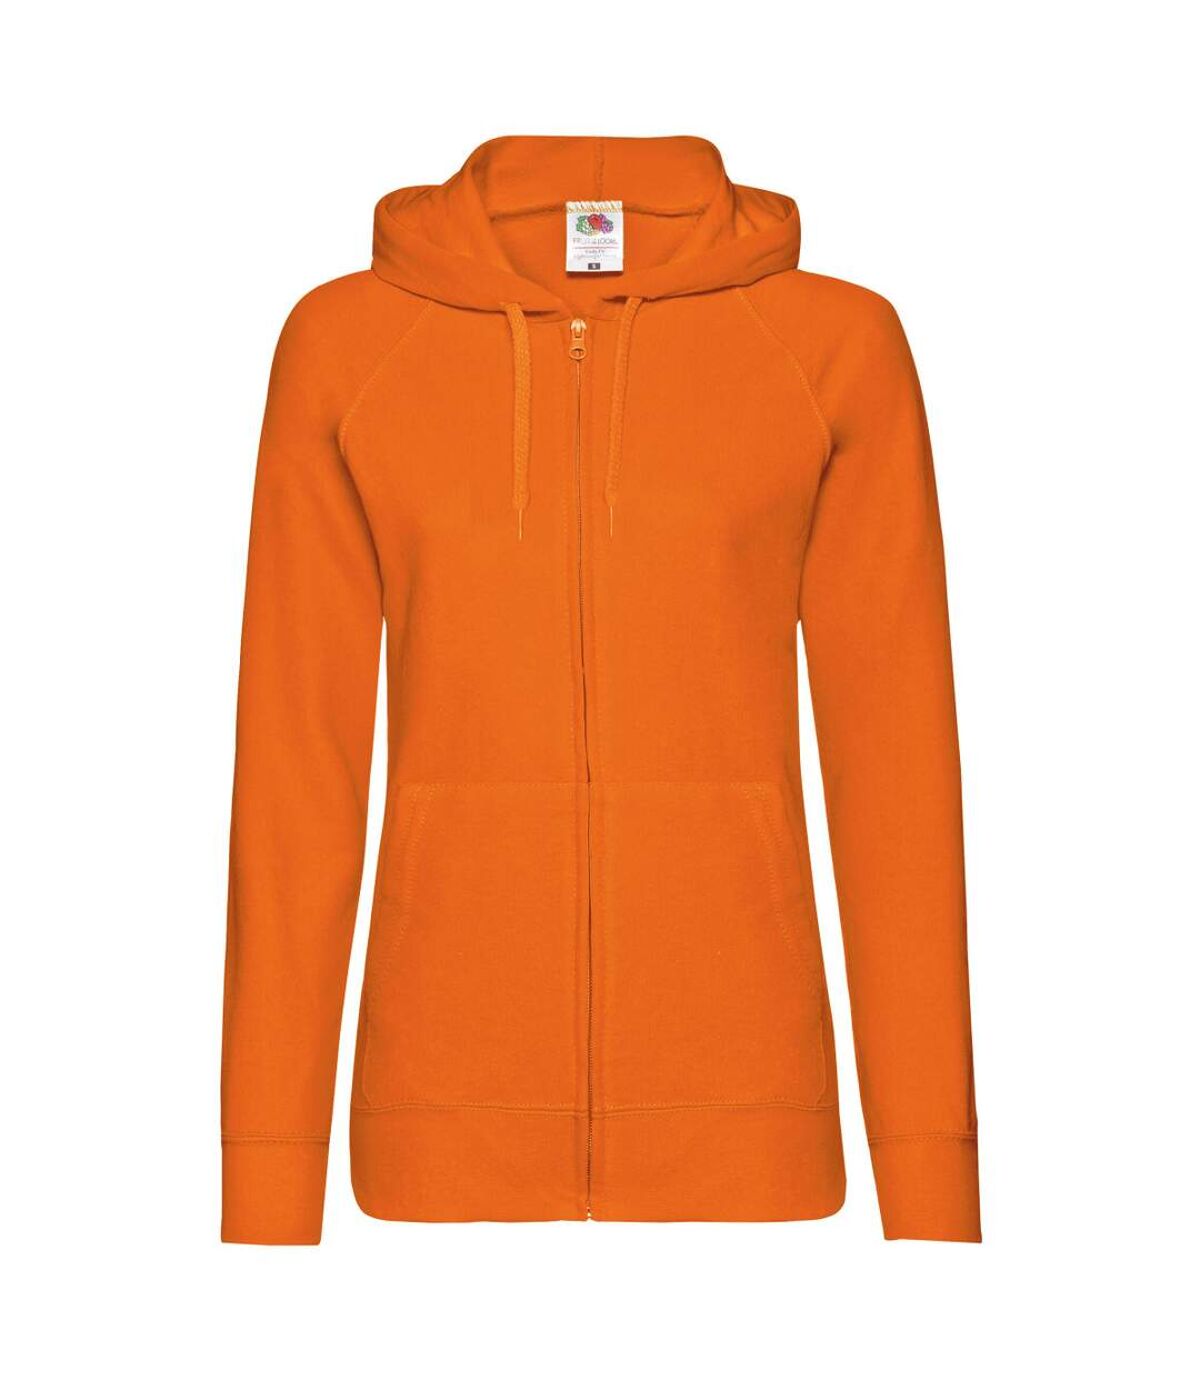 Fruit Of The Loom Ladies Fitted Hooded Sweatshirt (Orange)